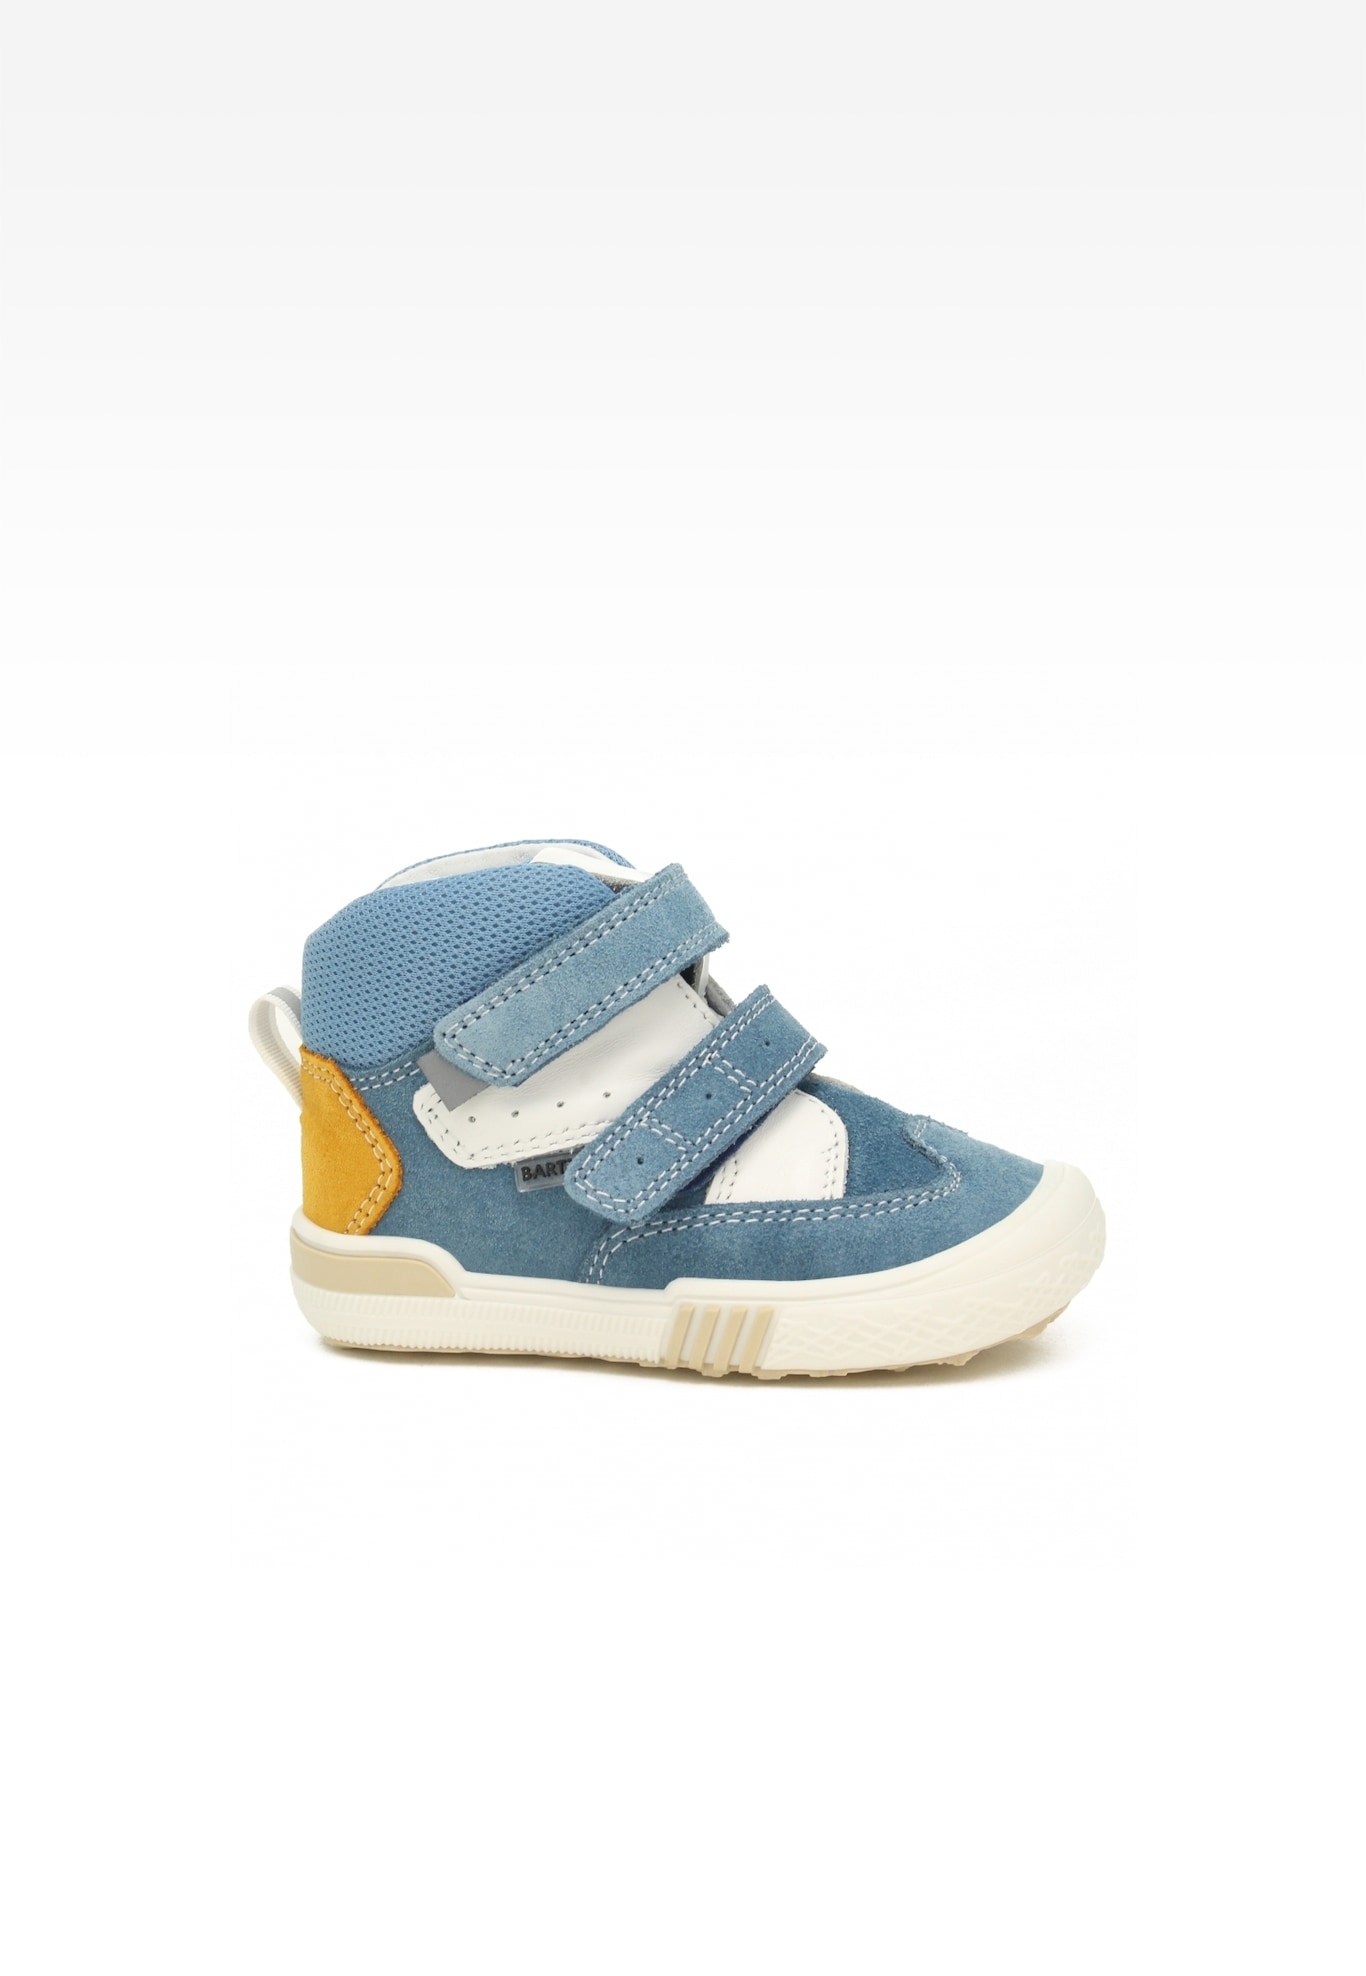 Sneakers BARTEK 021704-034 II, dla chłopców, niebiesko-biały